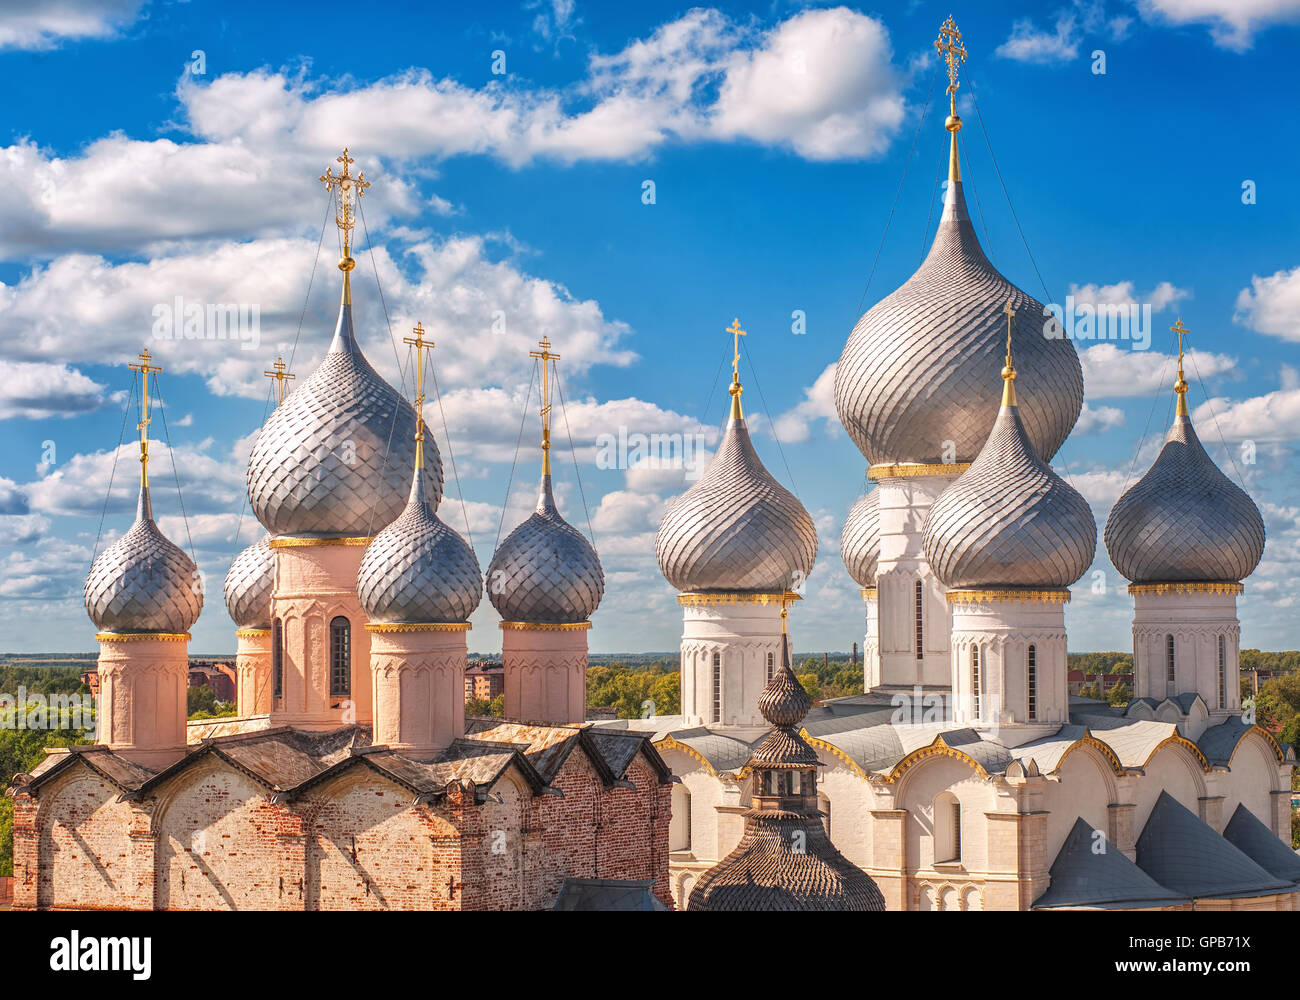 Les dômes d'argent traditionnels de l'Eglise orthodoxe russe de Rostov Kremlin, anneau d'or, Russie Banque D'Images